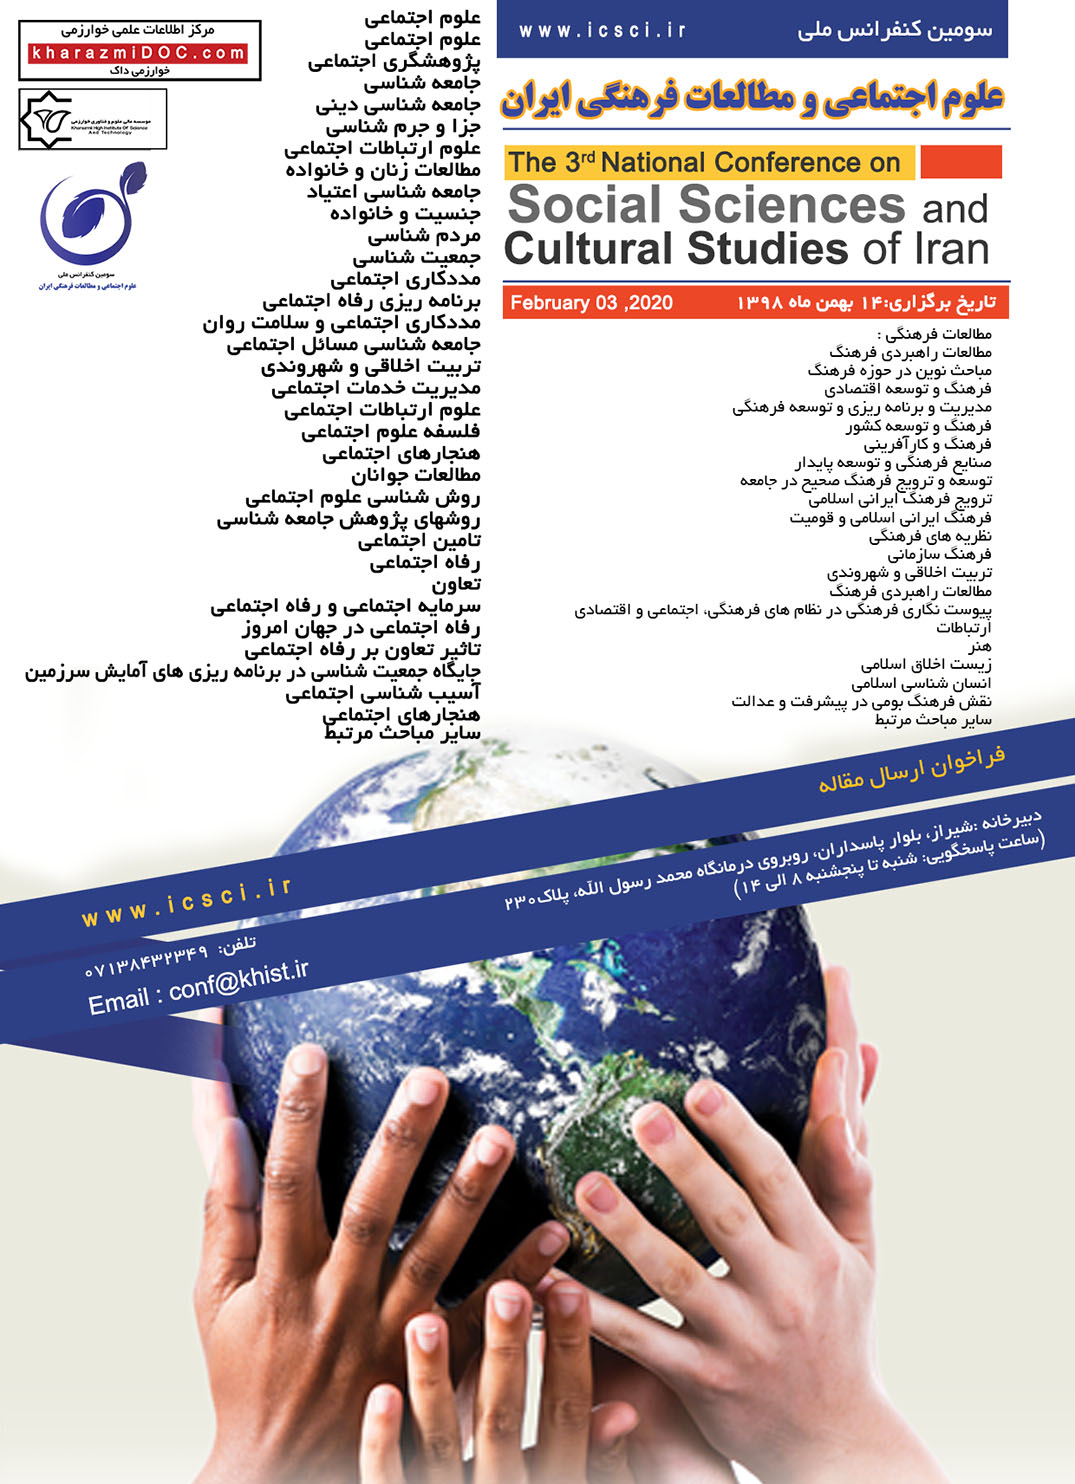 پوستر سومین کنفرانس ملی علوم اجتماعی و مطالعات فرهنگی ایران